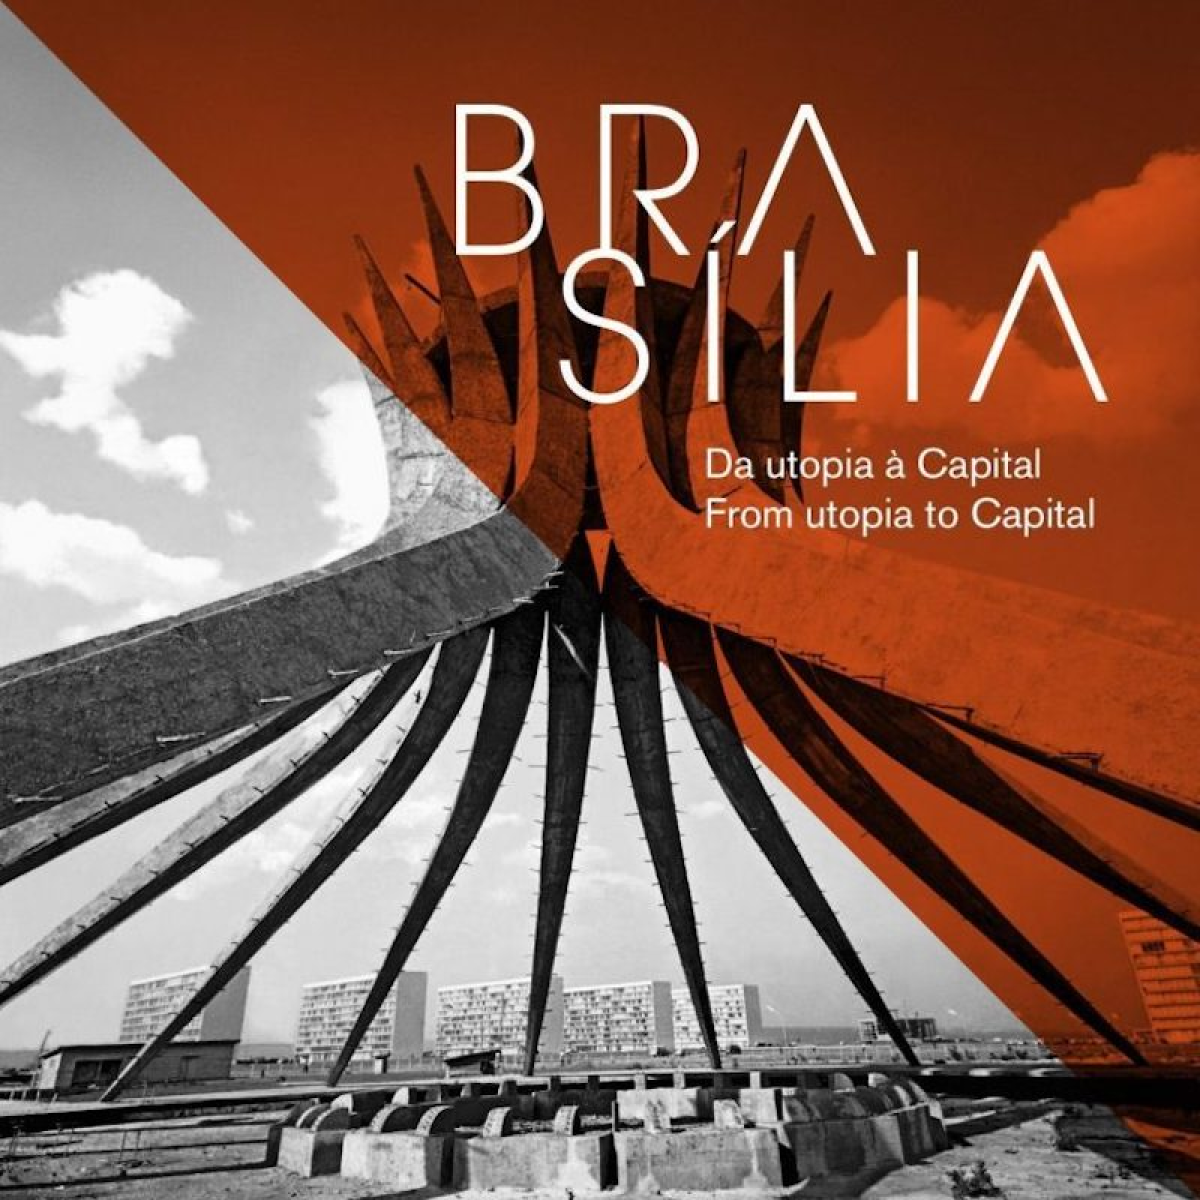 Mostra Brasília Viva leva histórias da capital à Cidade do Porto